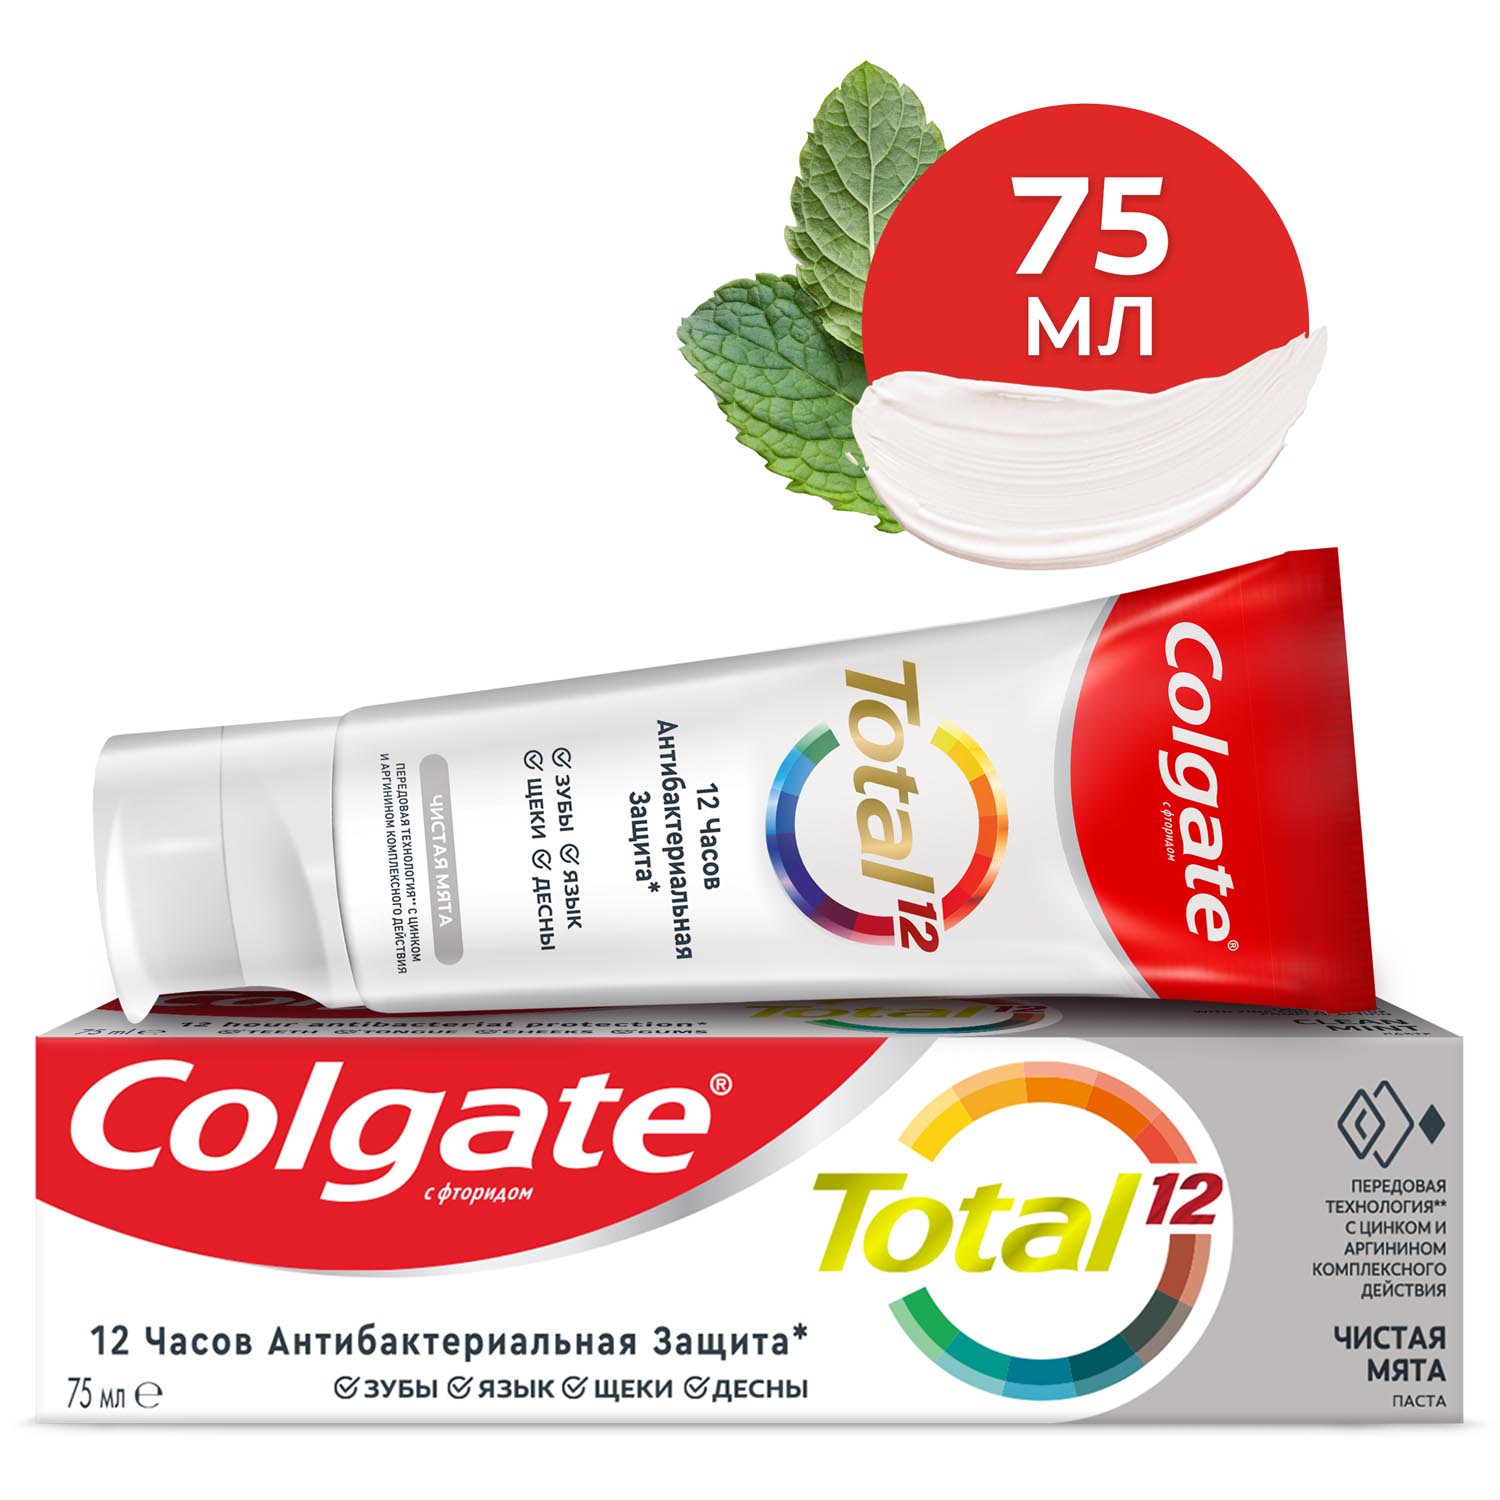 Зубная паста Colgate Total 12 Чистая мята с цинком и аргинином для комплексной антибактериальной защиты всей полости рта в течение 12 часов, 75 мл